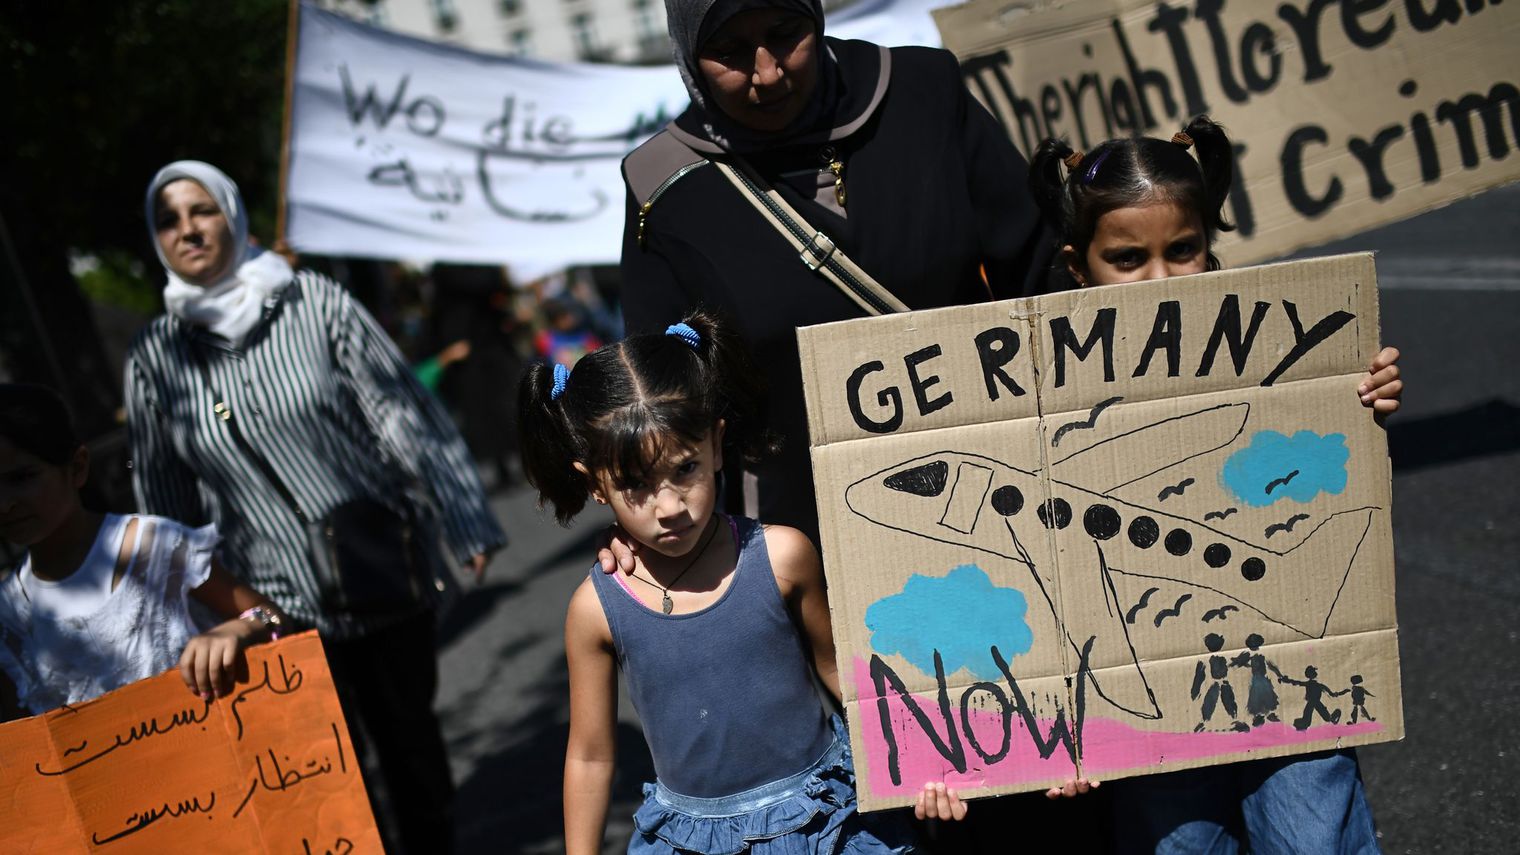 Des réfugiés manifestent devant l’ambassade d’Allemagne à Athènes